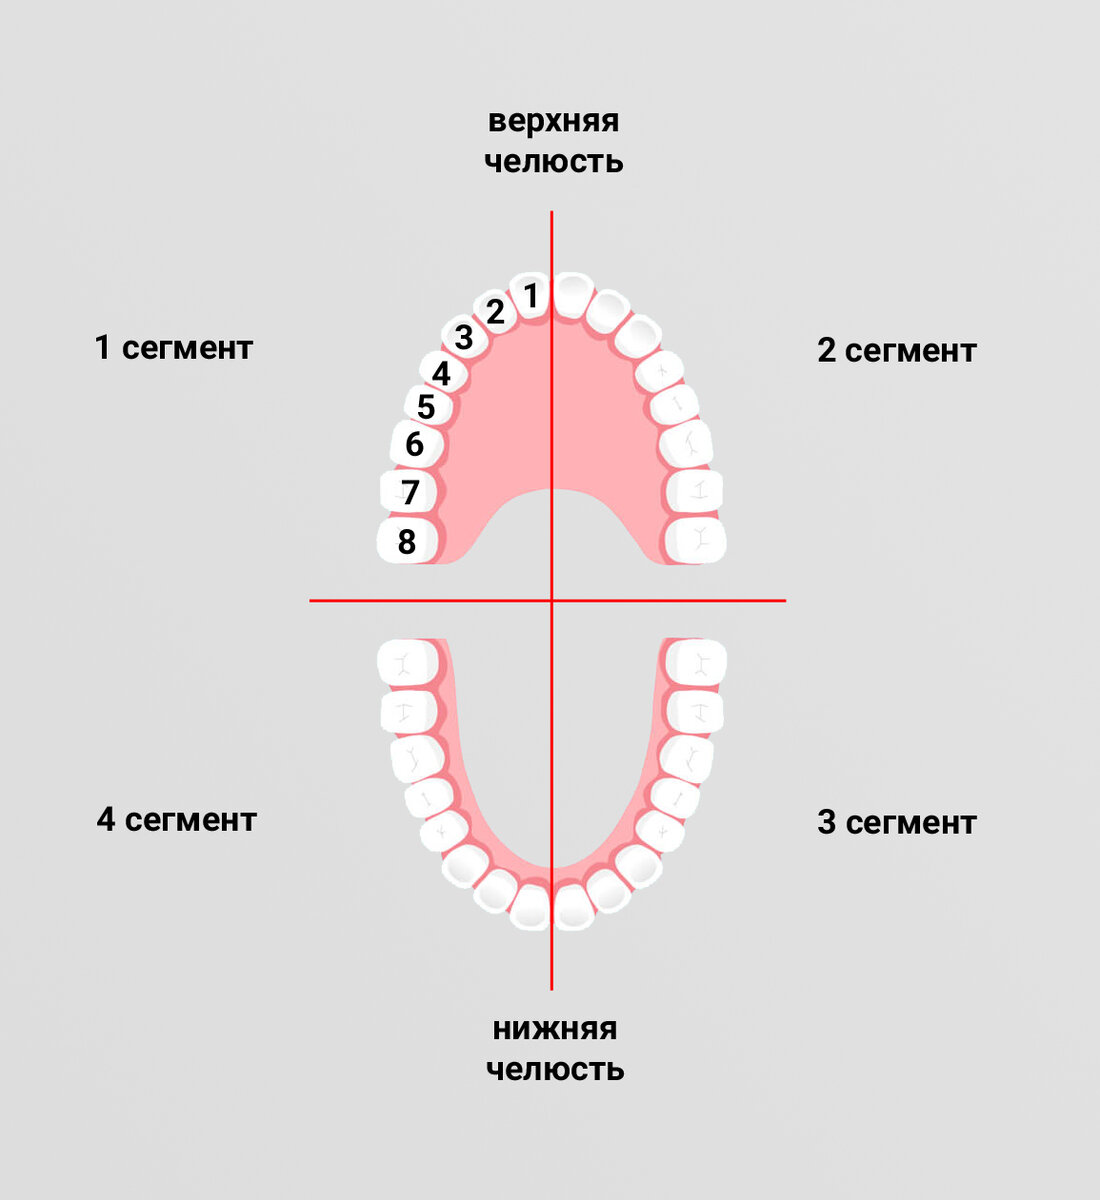 Зуб 1.4. Зубная формула в стоматологии сегменты. Зубная формула по международной системе обозначения зубов. Деление челюсти на 4 зоны. Схема зубов в стоматологии.